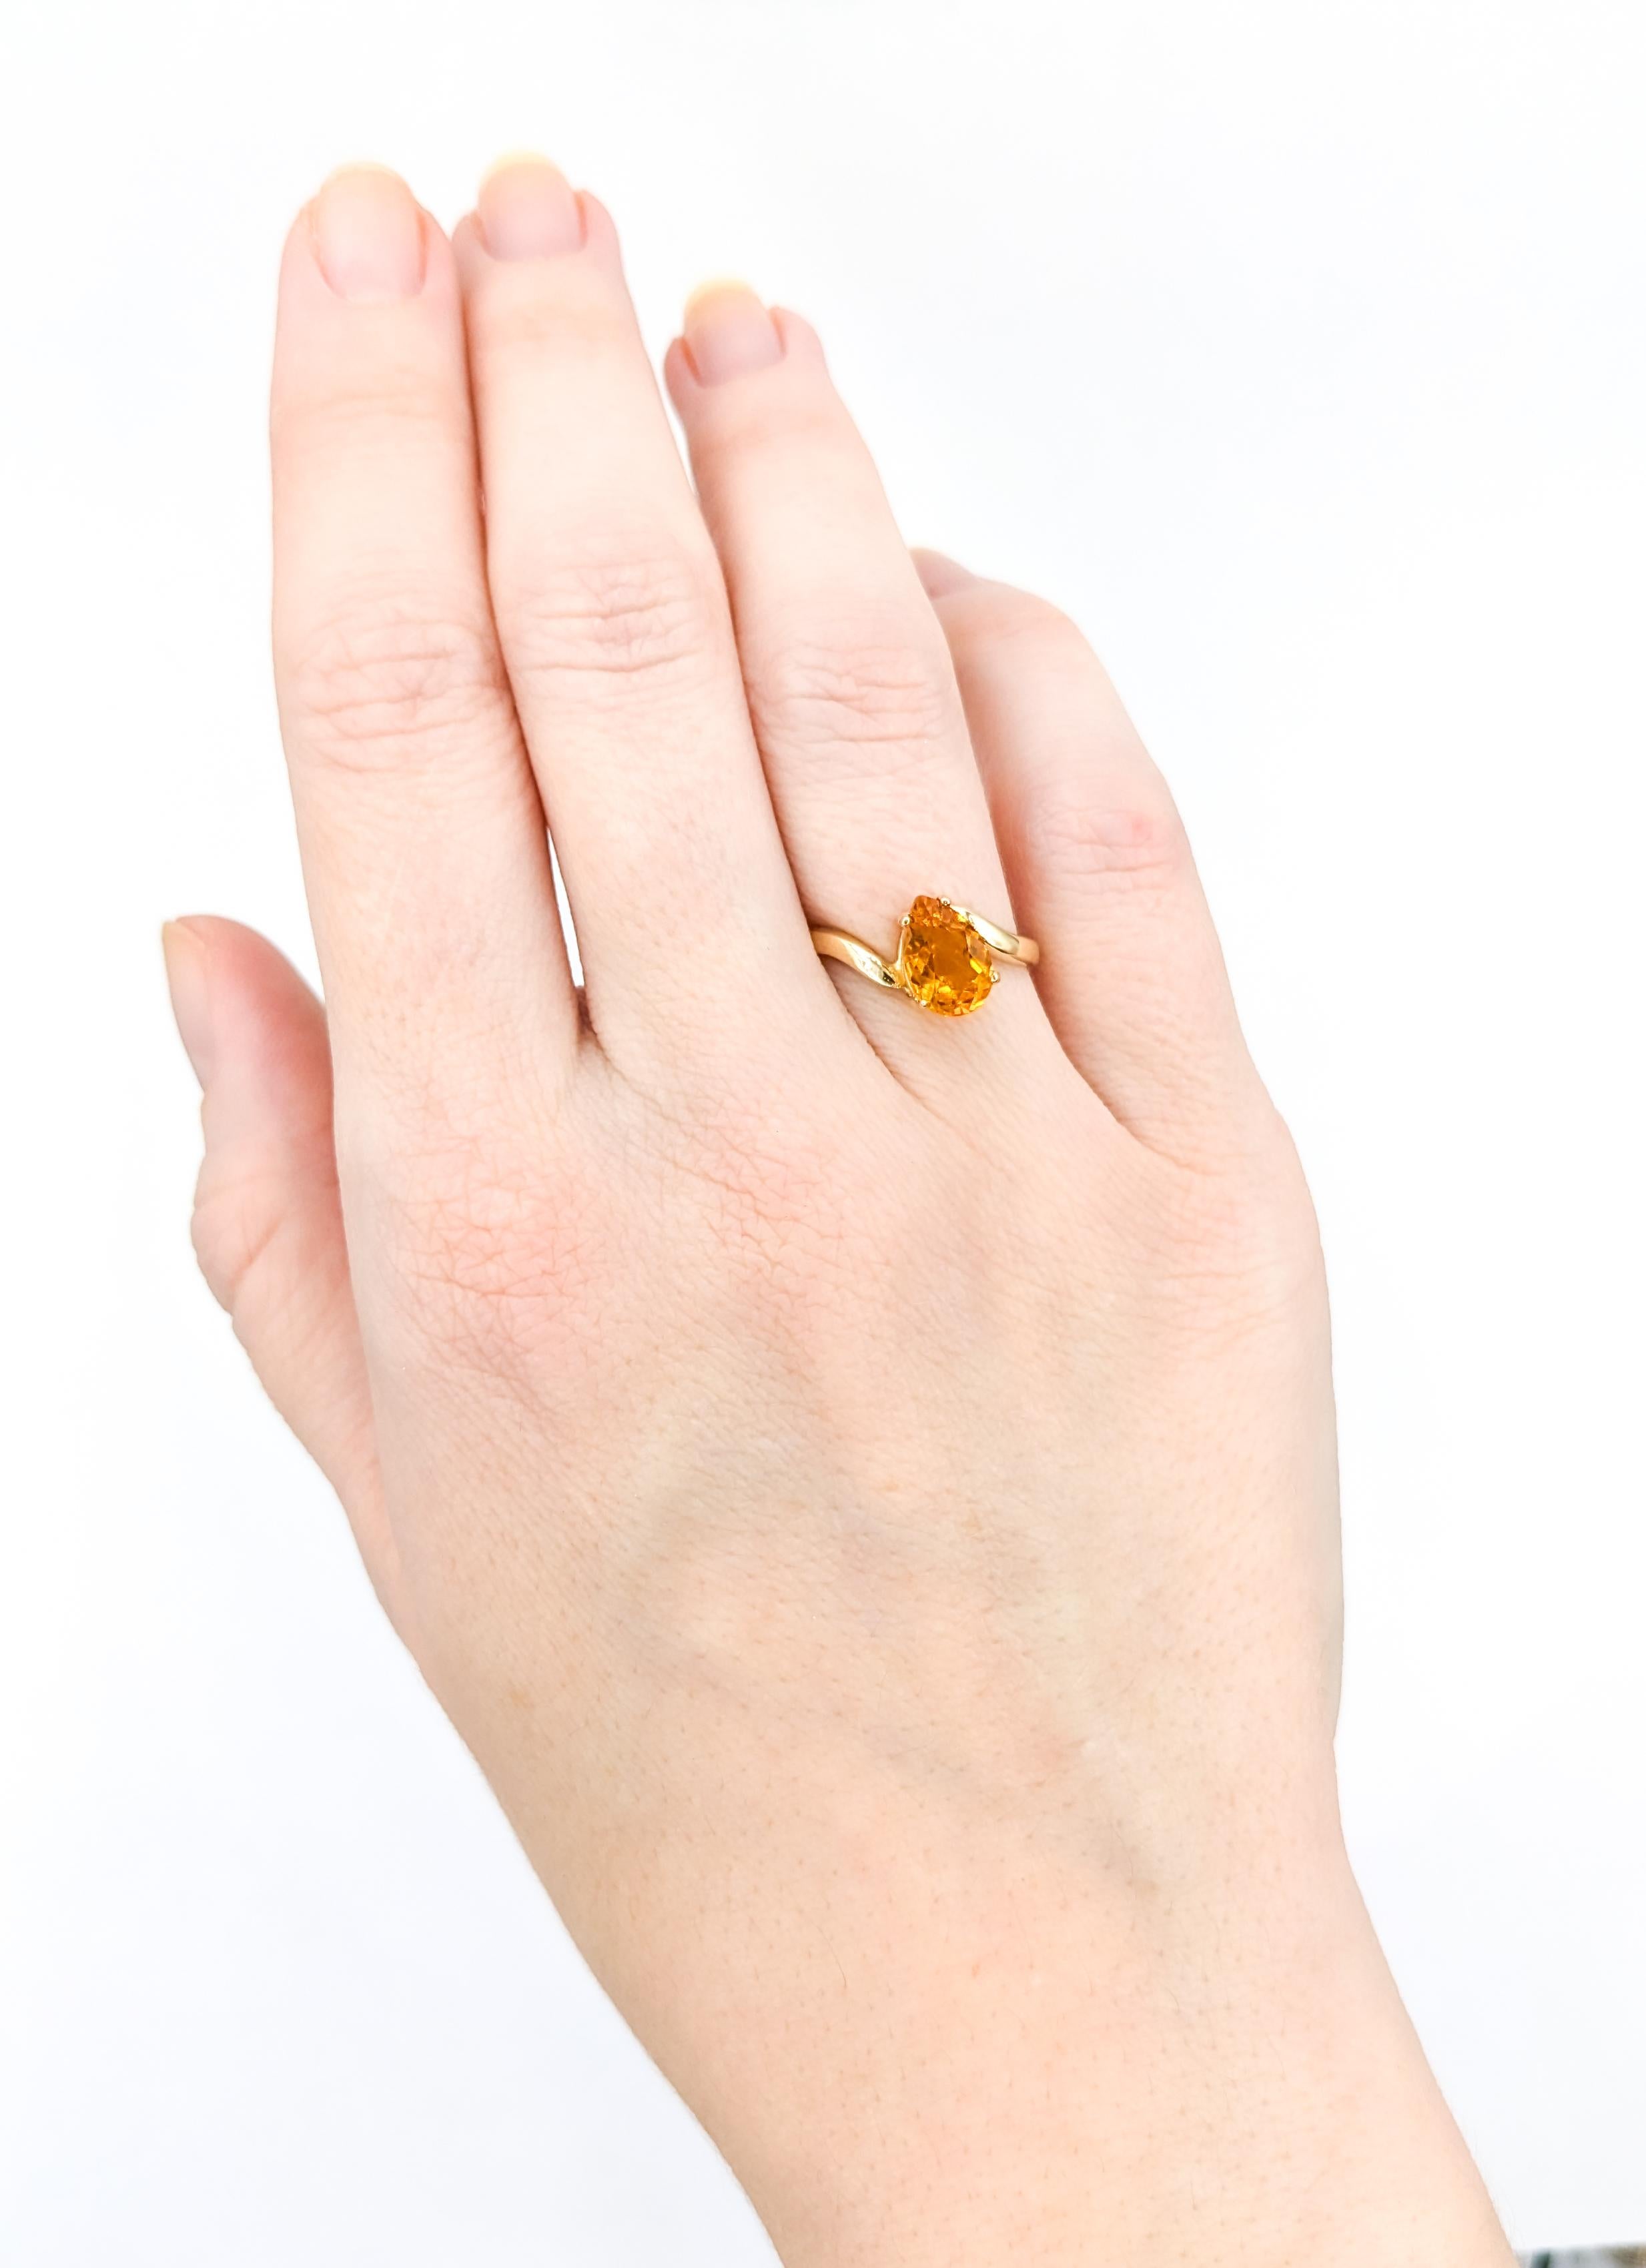 Citrin-Ring mit Birnenschliff in Gold 

Dieser hübsche Citrin-Ring aus 14-karätigem Gelbgold ist ein echter Hingucker. Das Herzstück ist ein atemberaubender 9x6 mm großer Citrin im Birnenschliff mit einer bezaubernden orangen Farbe. Der in Größe 6